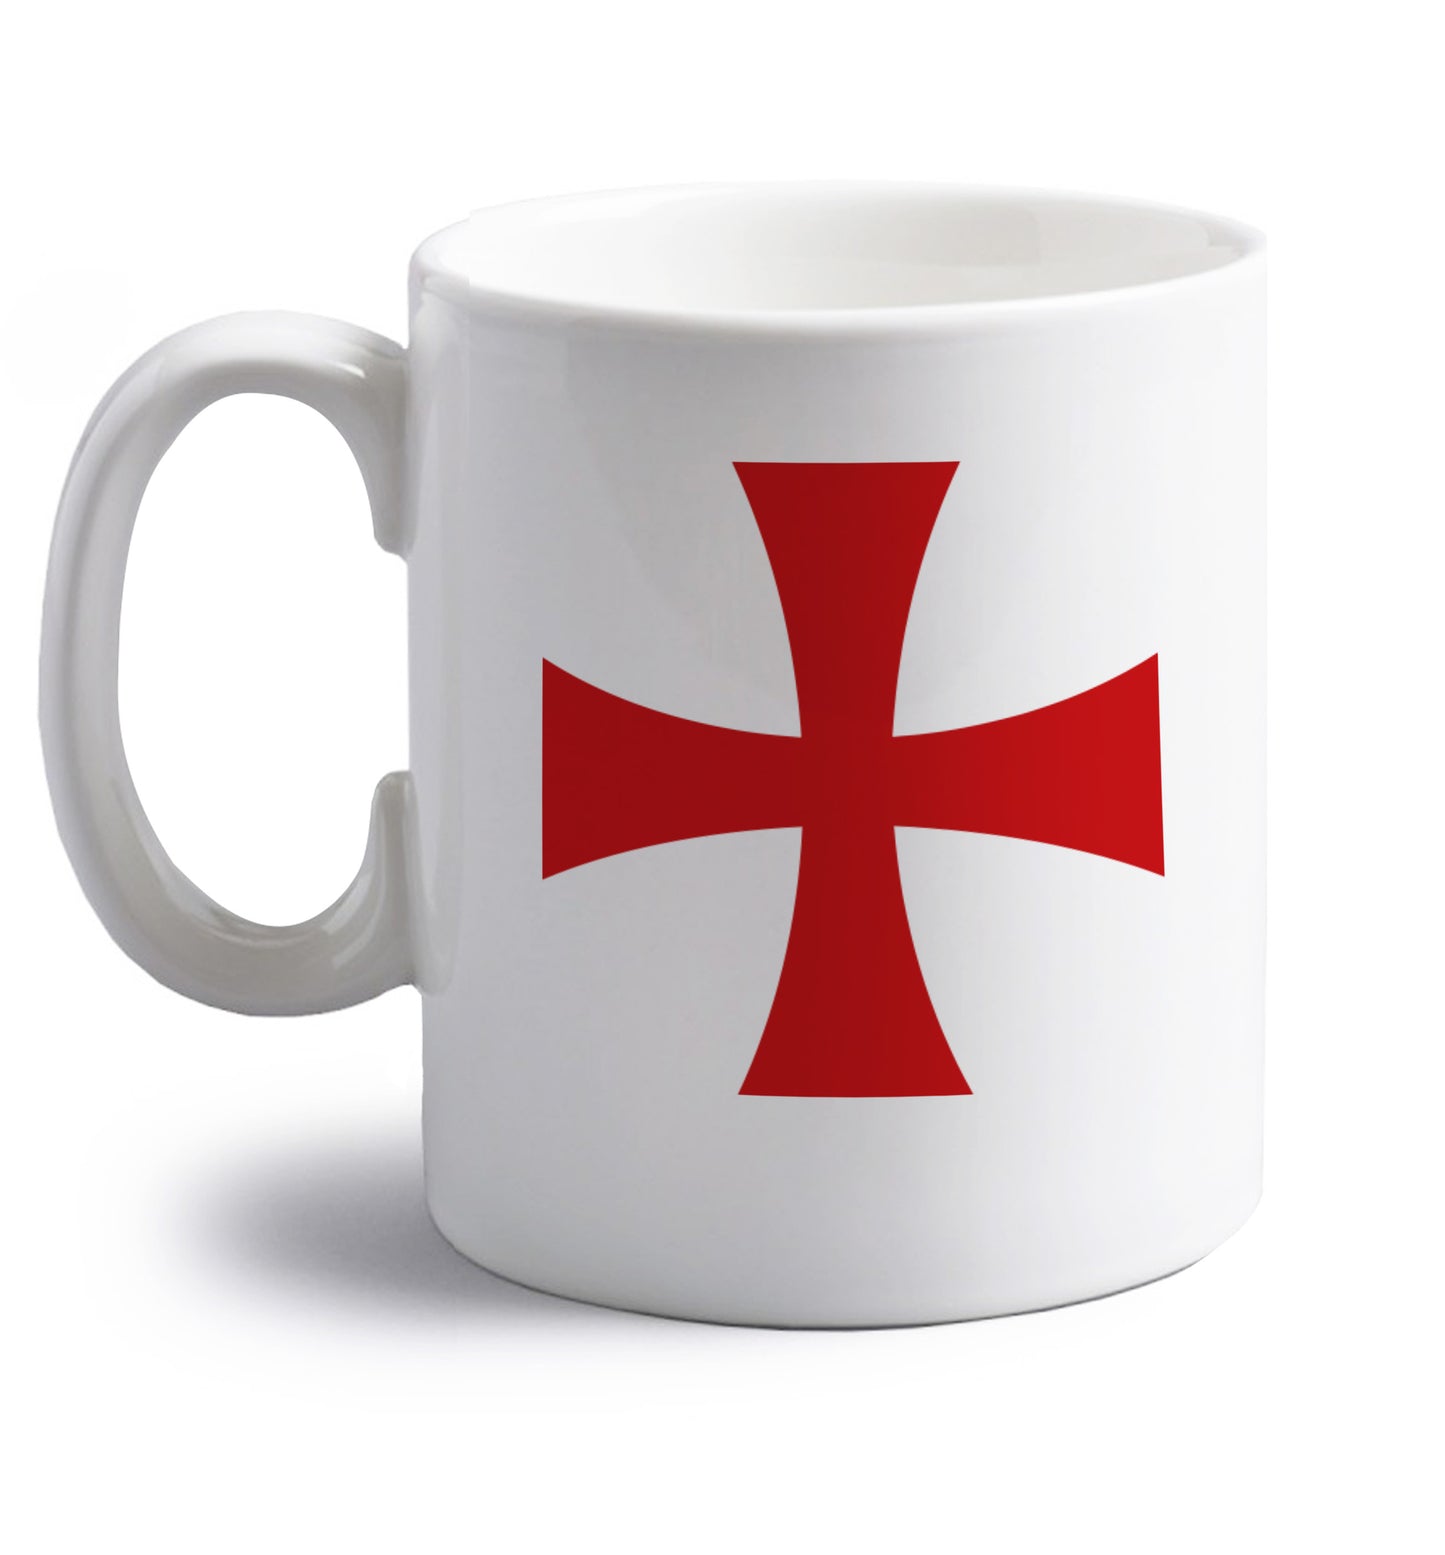 Knights Templar cross right handed white ceramic mug 